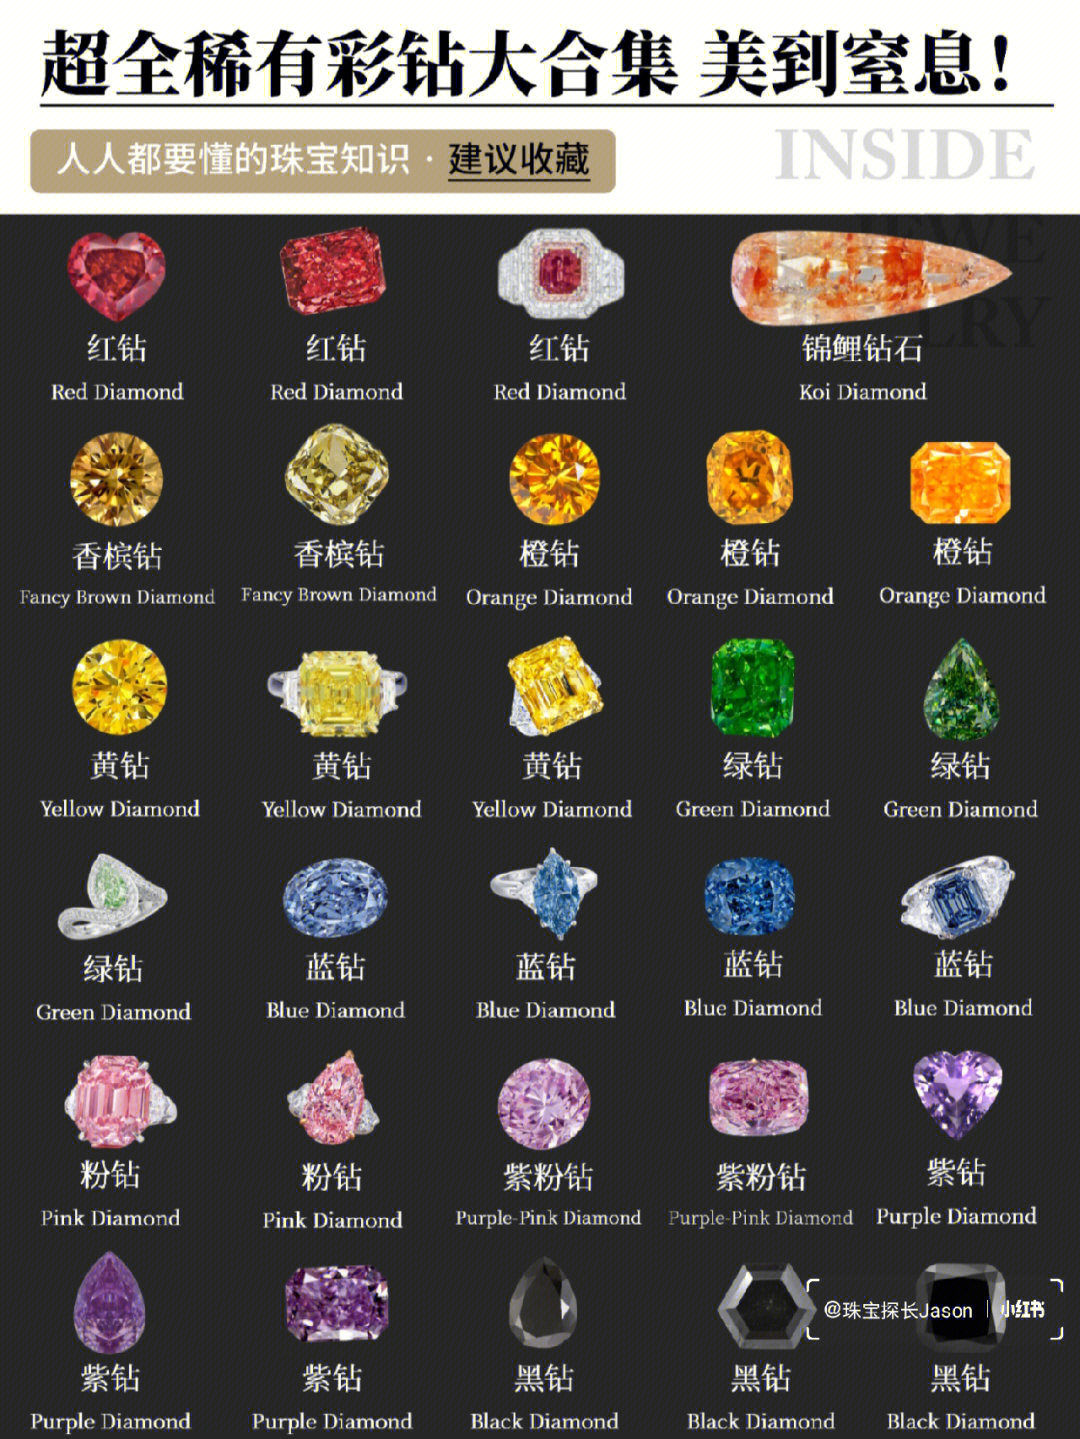 大家都爱的钻石竟然有那么多种颜色?而且每一种都是美到窒息?